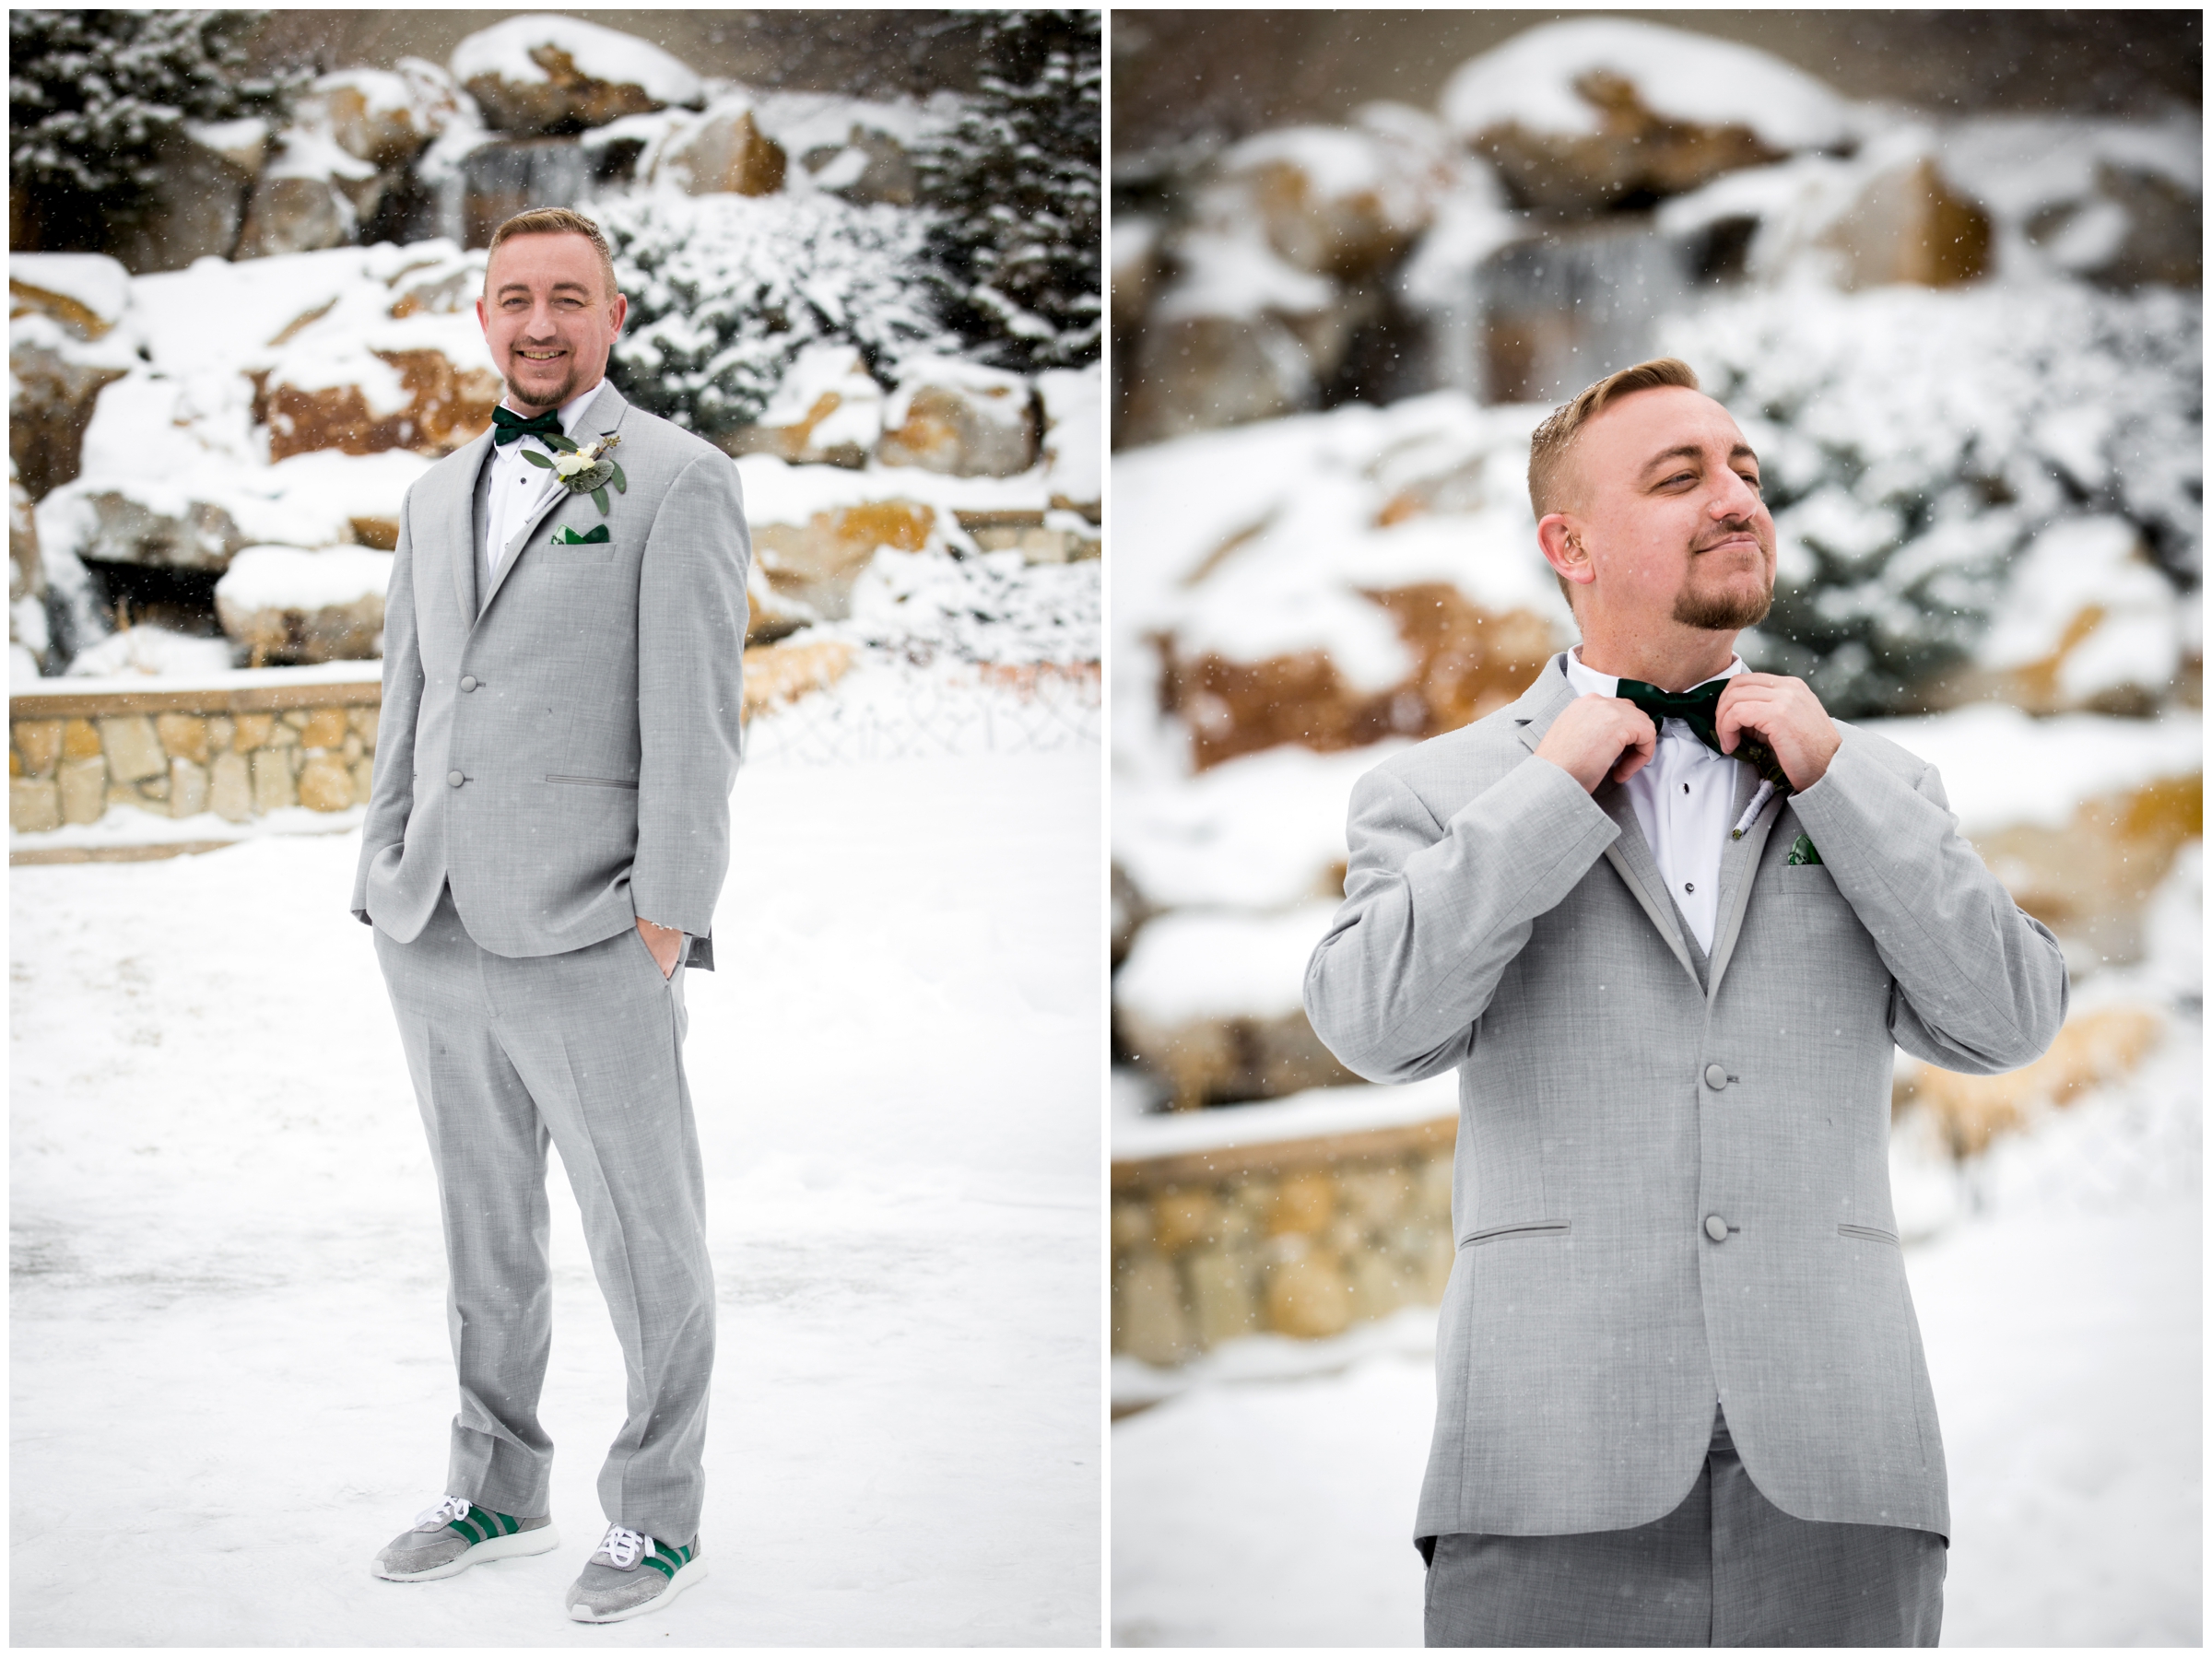 Colorado groom fixing his tie before winter wedding 